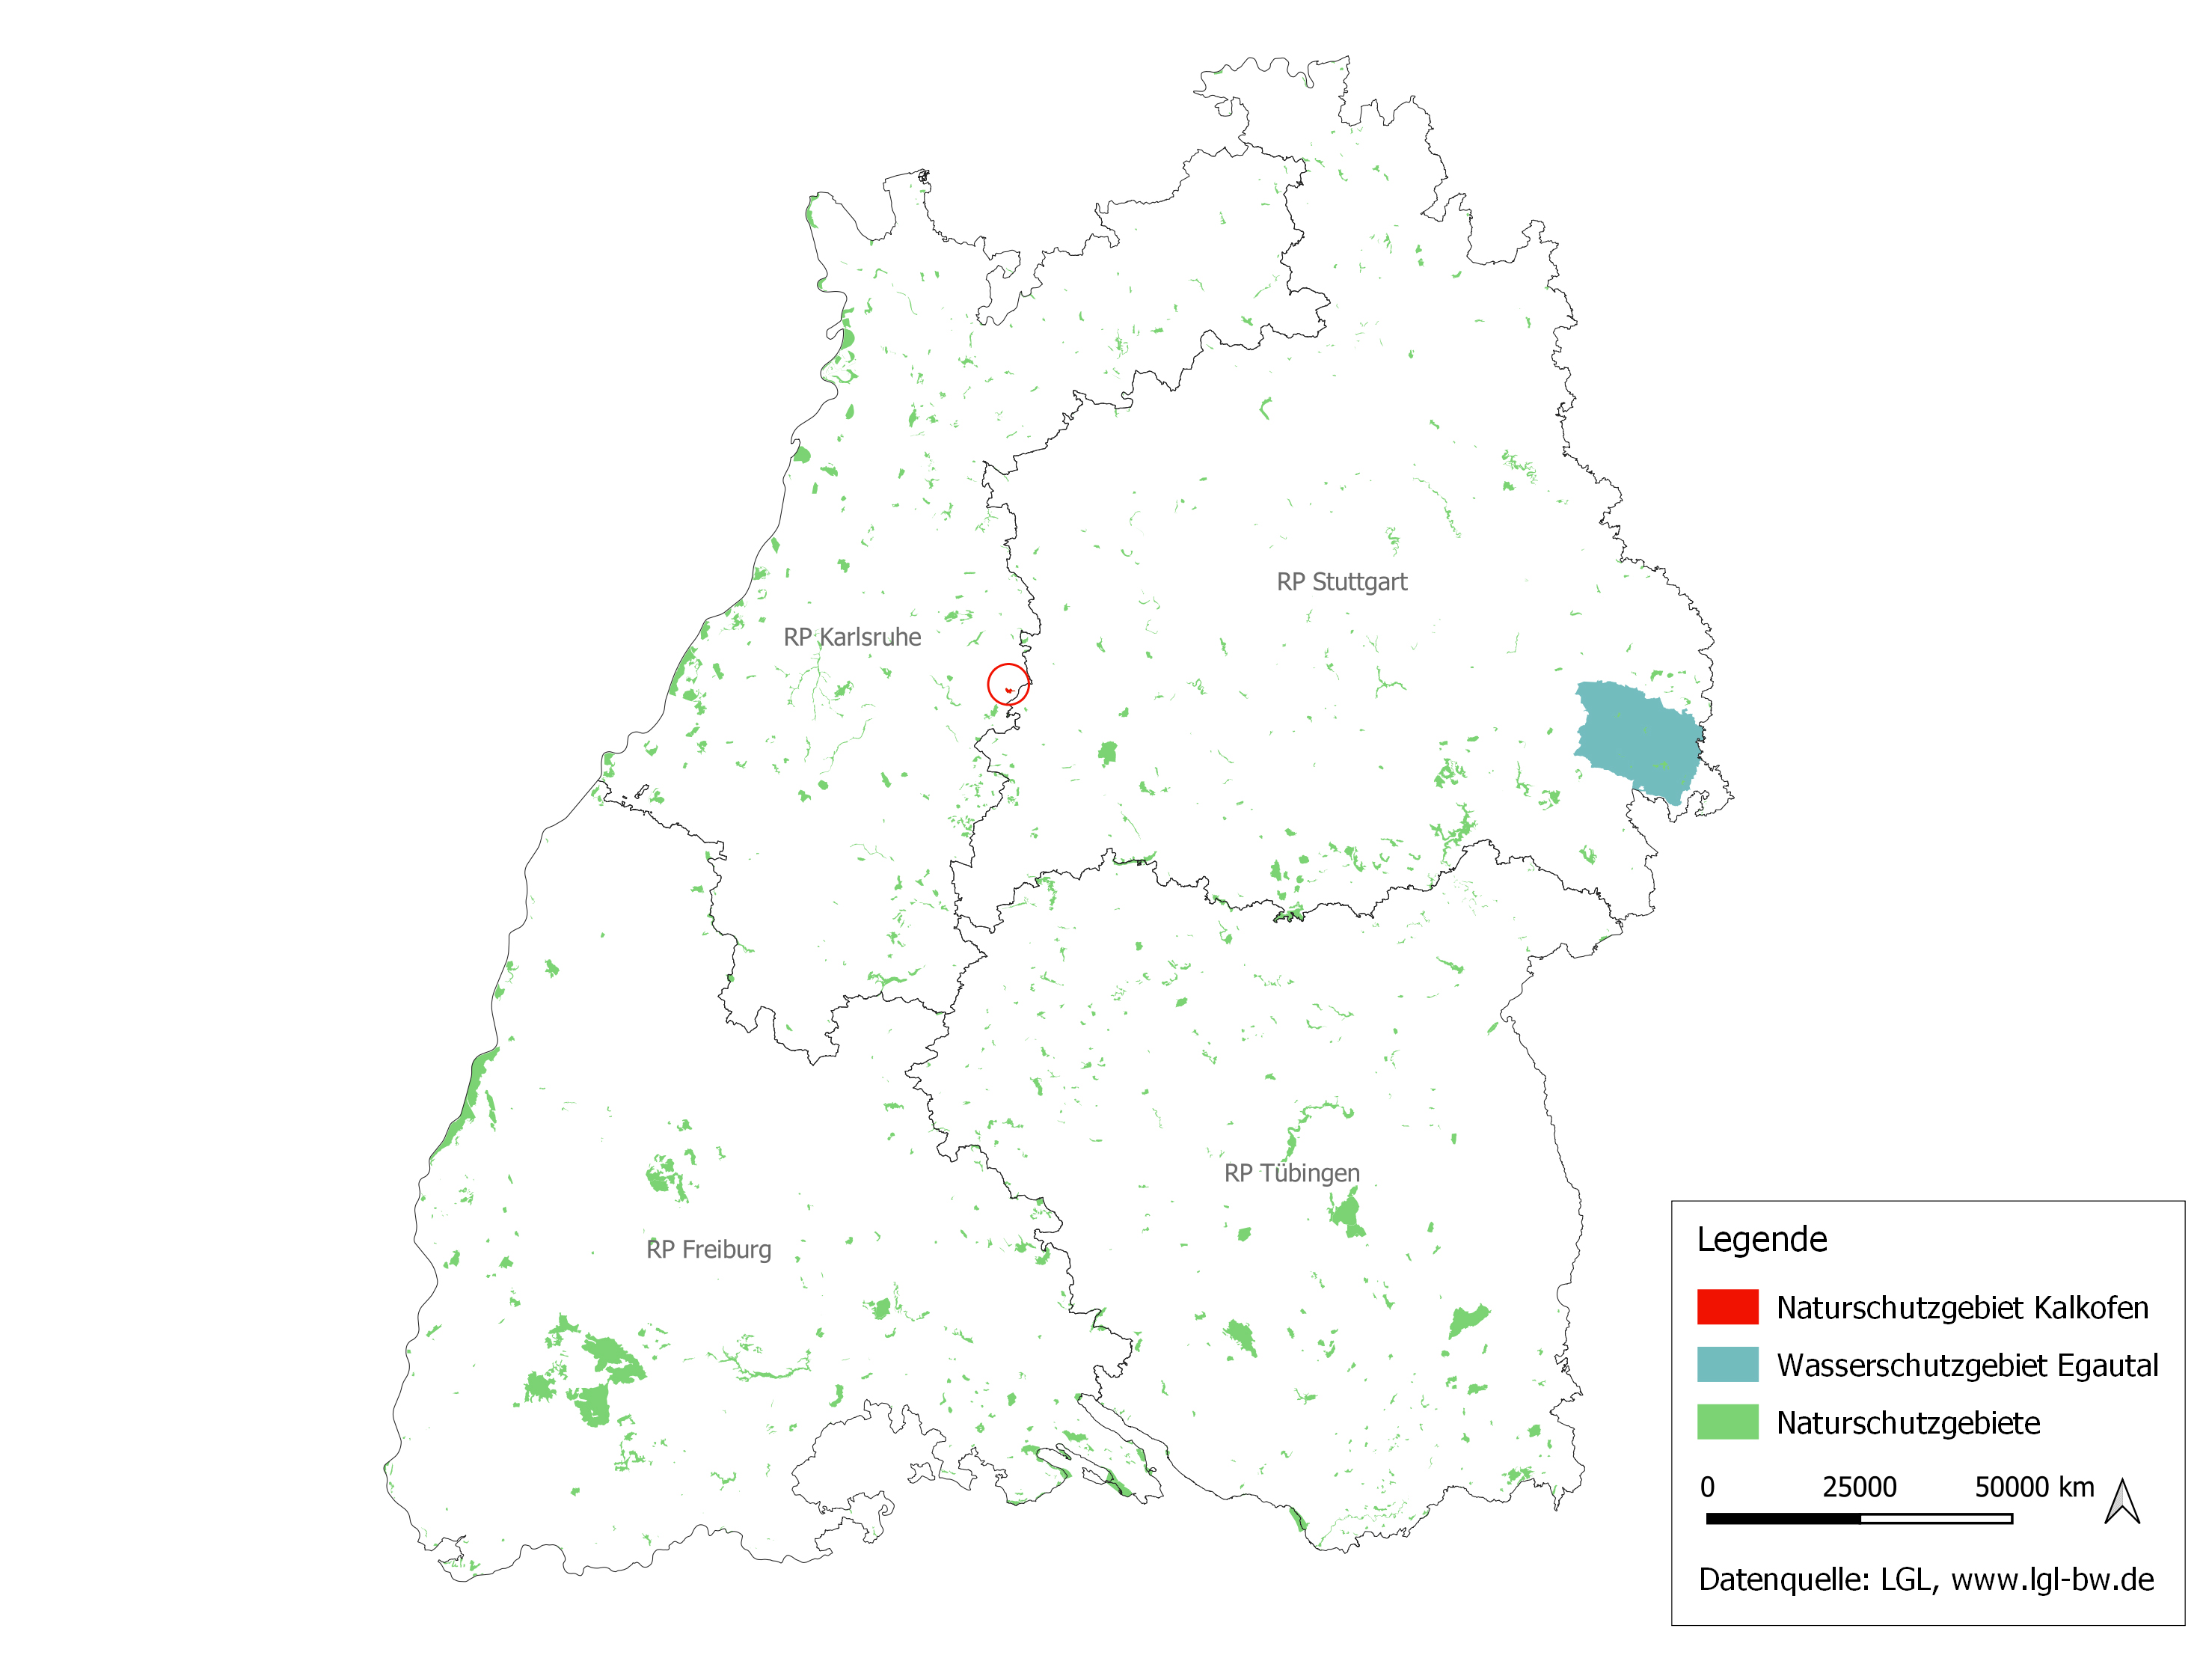 Karte zu Pestiziden in Naturschutzgebieten Baden-Württembergs. Grafik: Landesamt für Geoinformation und Landentwicklung